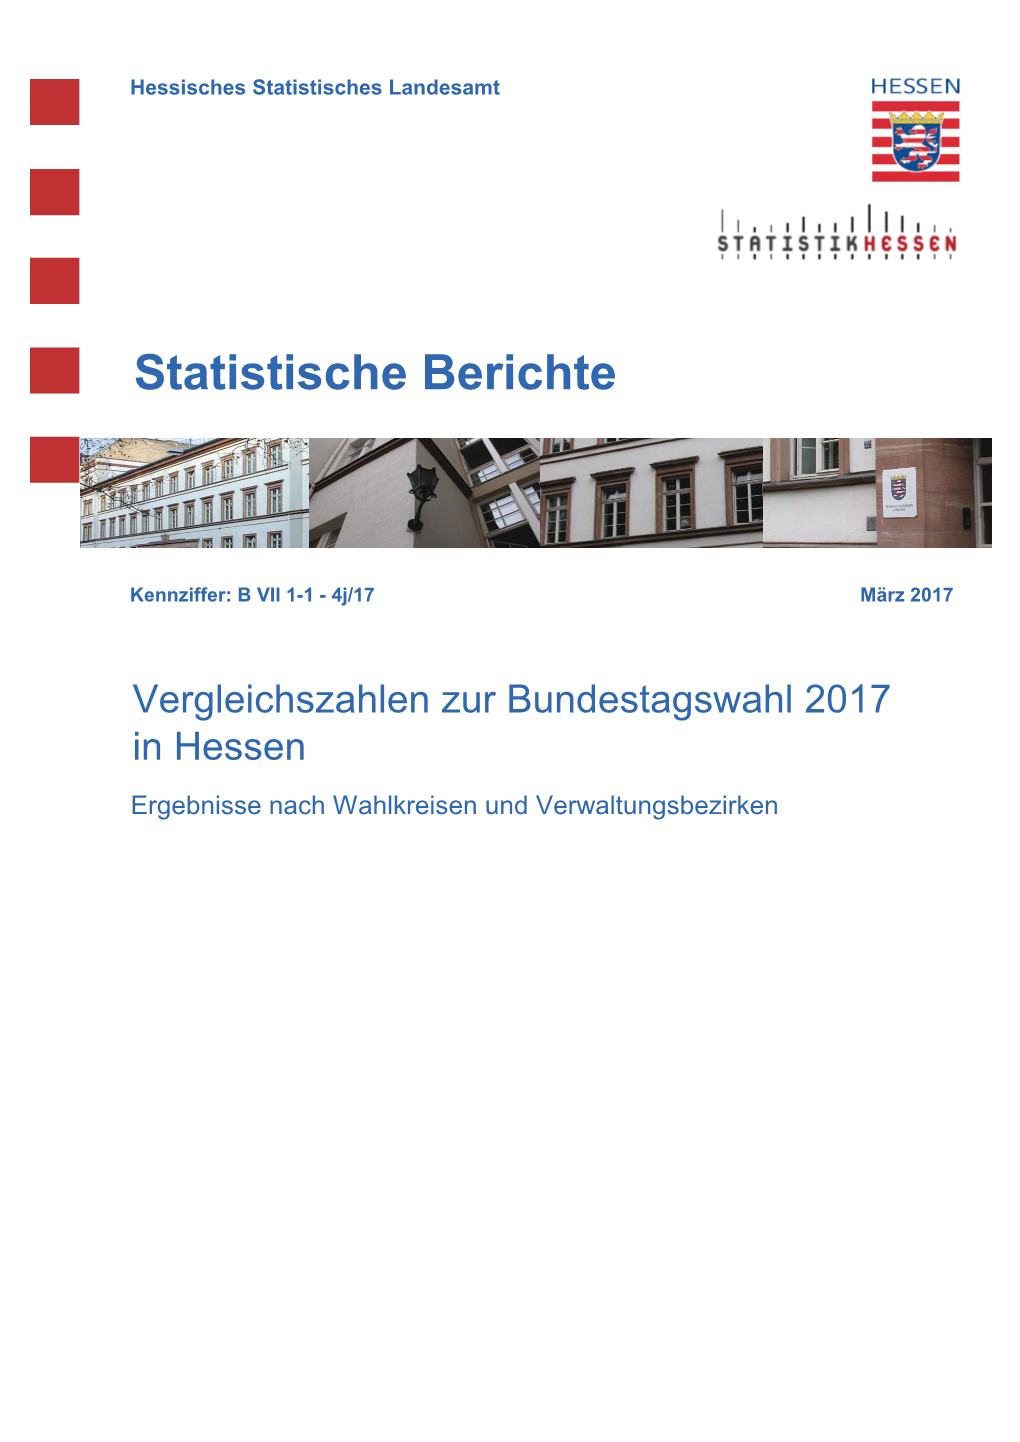 Vergleichszahlen Zur Bundestagswahl 2017 in Hessen Ergebnisse Nach Wahlkreisen Und Verwaltungsbezirken Hessisches Statistisches Landesamt, Wiesbaden